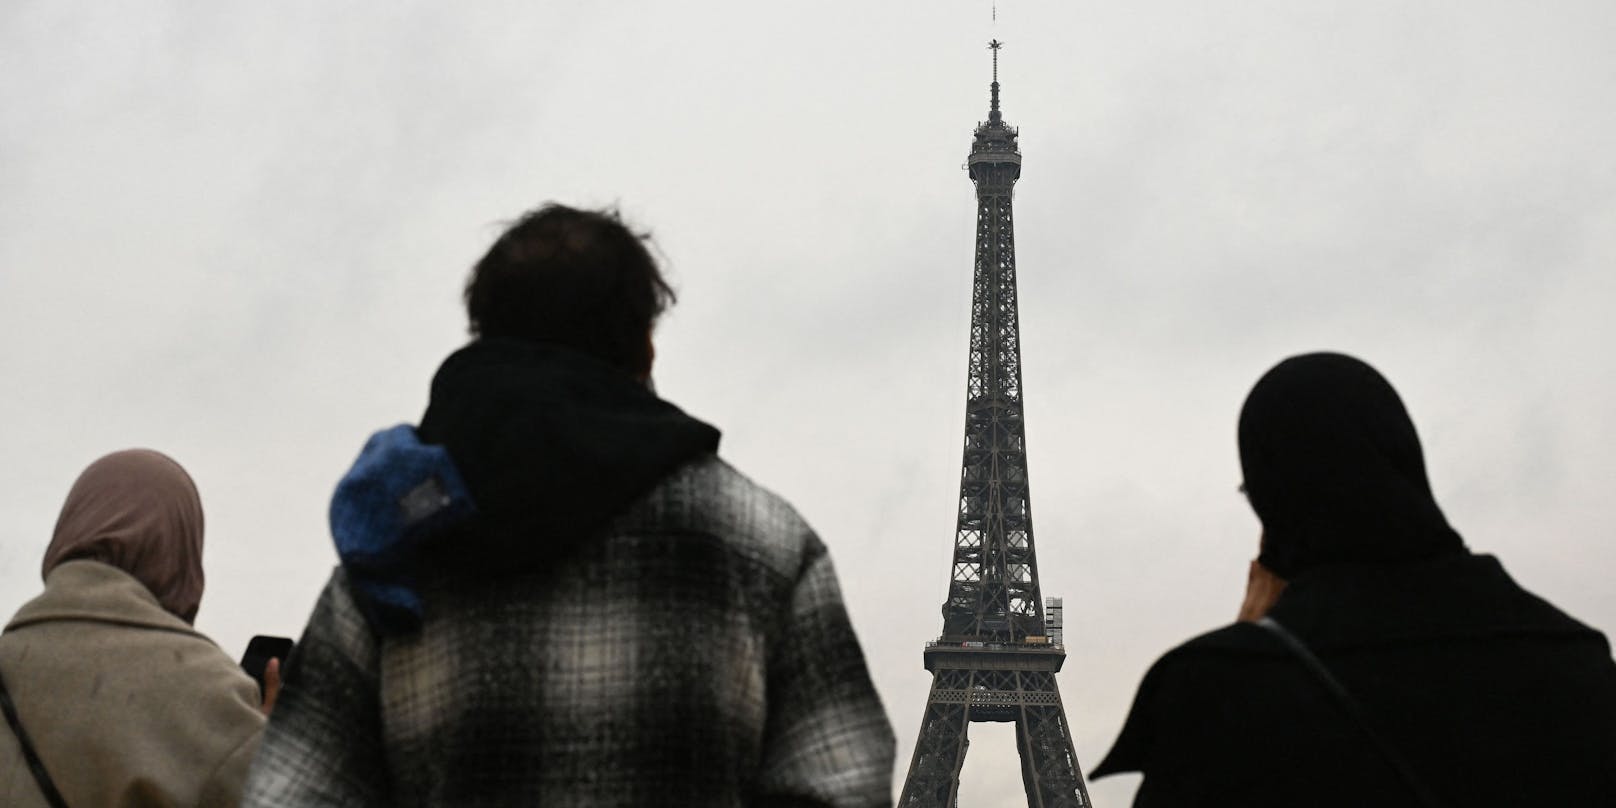 Bürgerinnen und Bürger schauen gespannt dabei zu, wie das Pariser Wahrzeichen wächst.